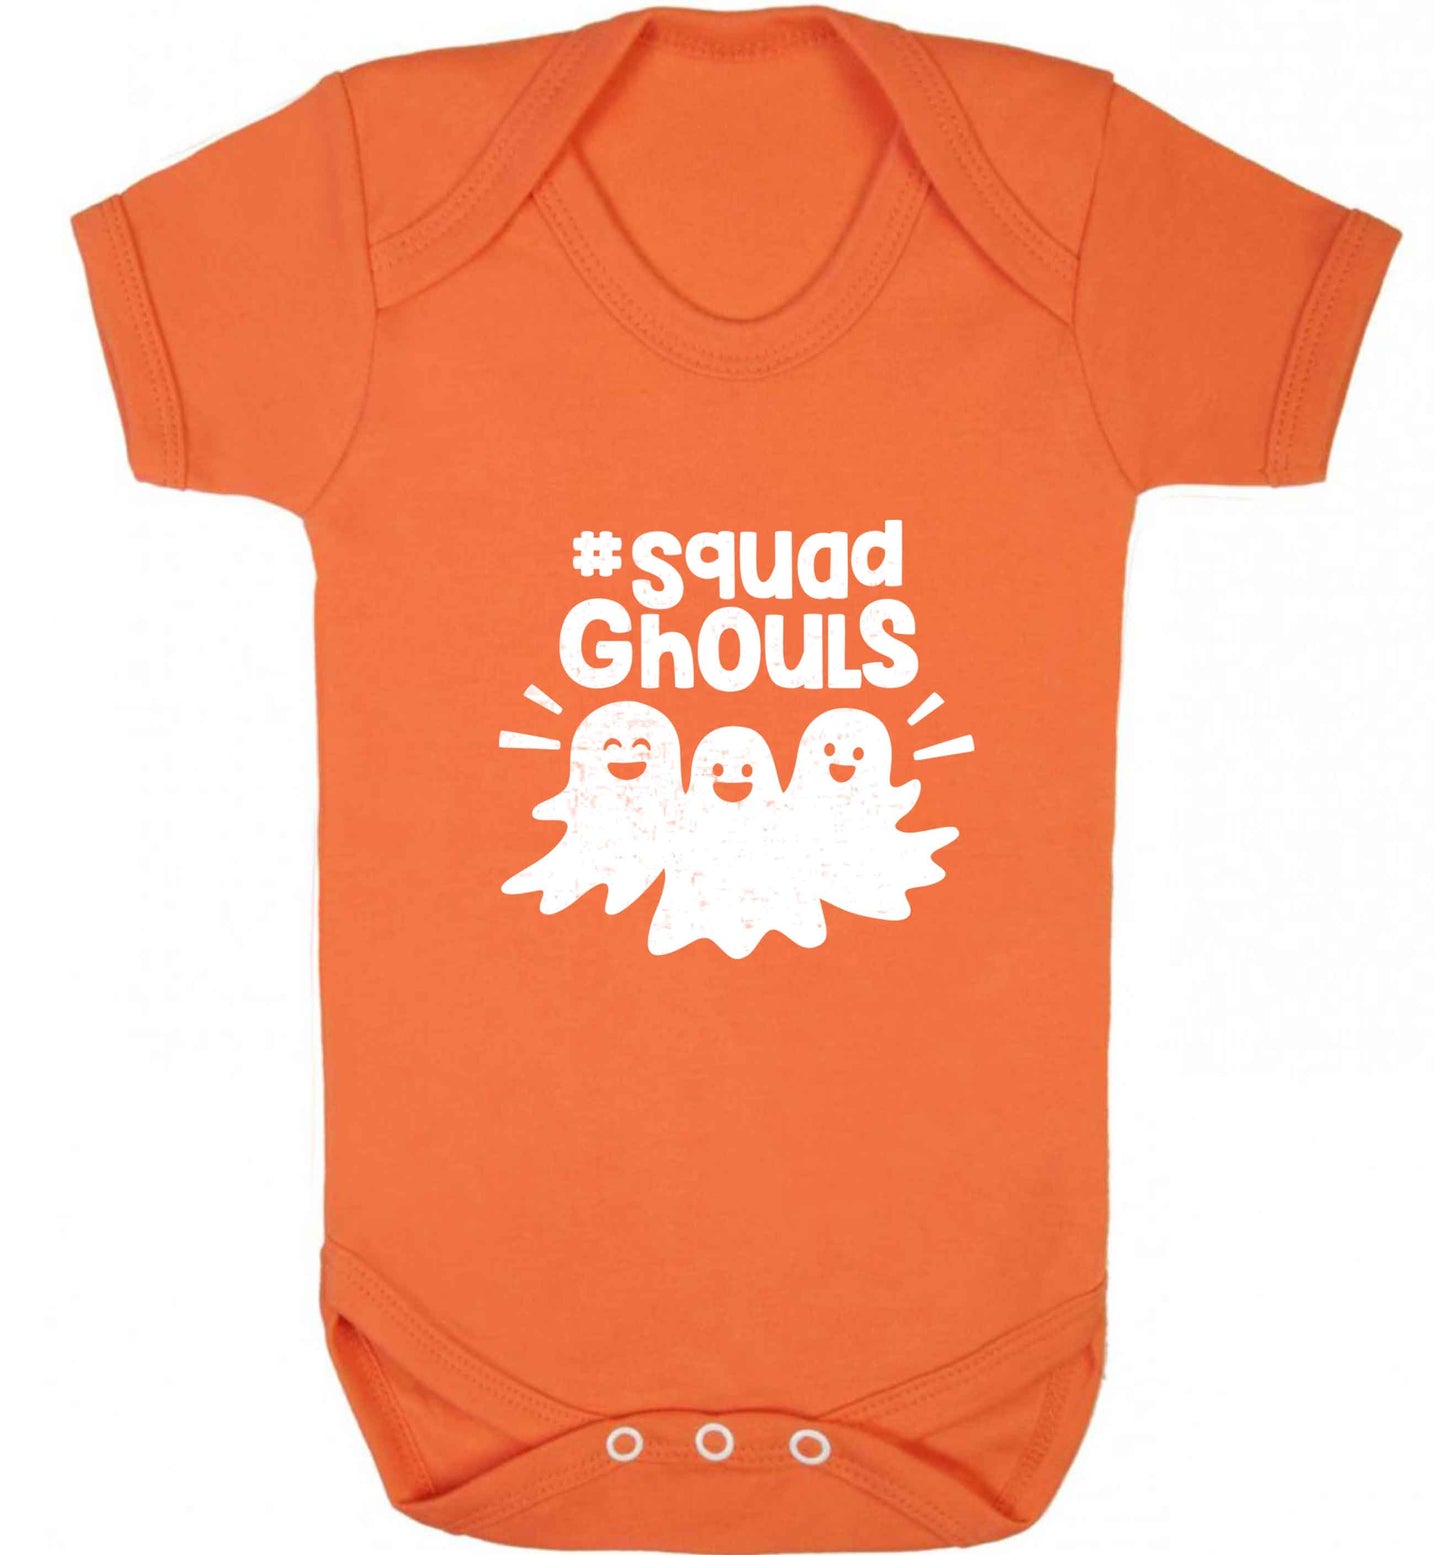 Squad ghouls Kit baby vest orange 18-24 months